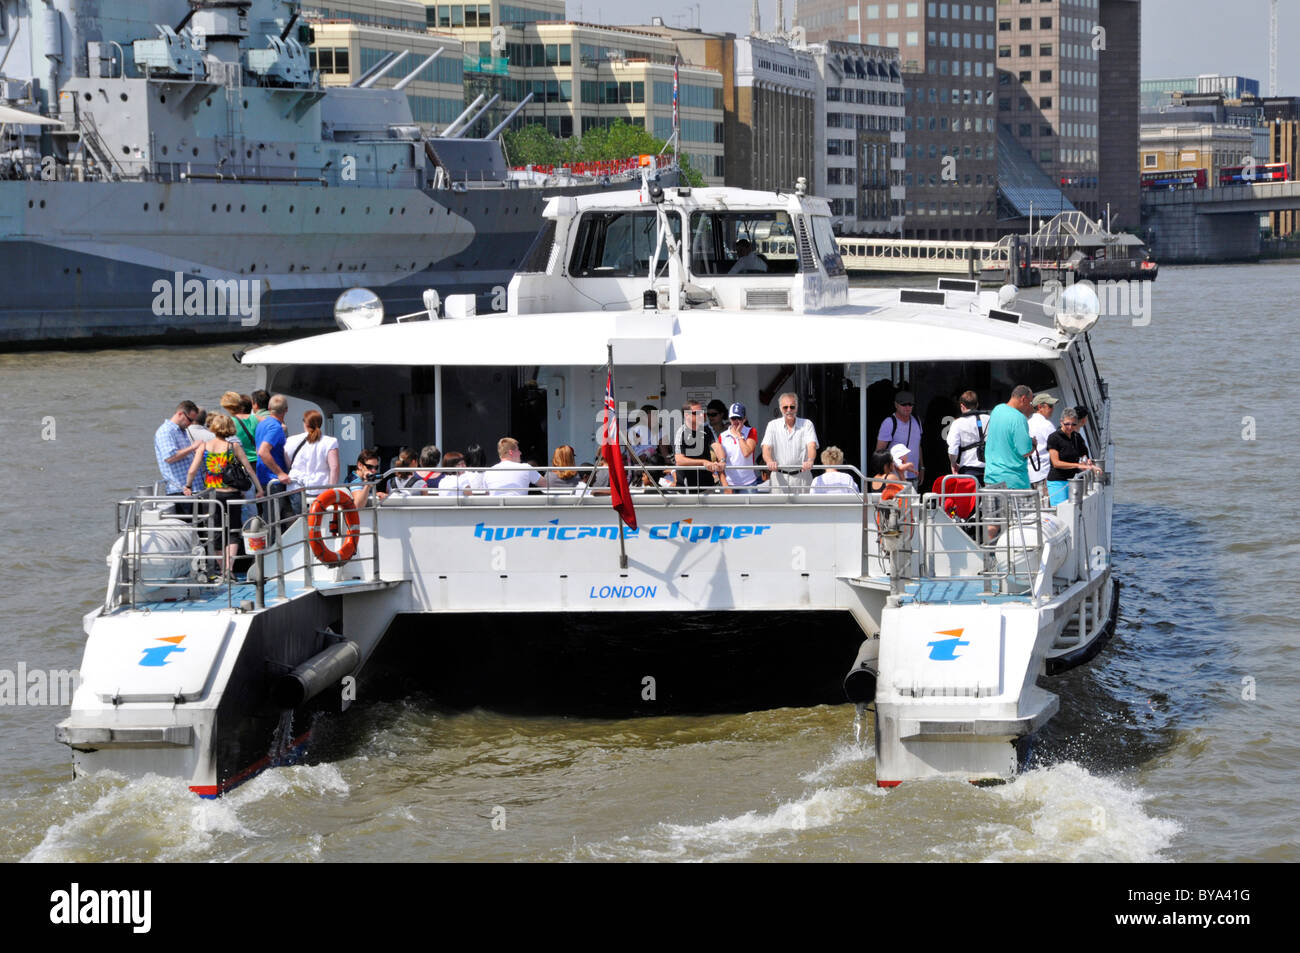 Menschenmenge Reisende auf dem Heck des Thames Clipper katamaran Boot ein öffentlicher Transport Flussbus Service auf London Berühmter Fluss England Großbritannien Stockfoto